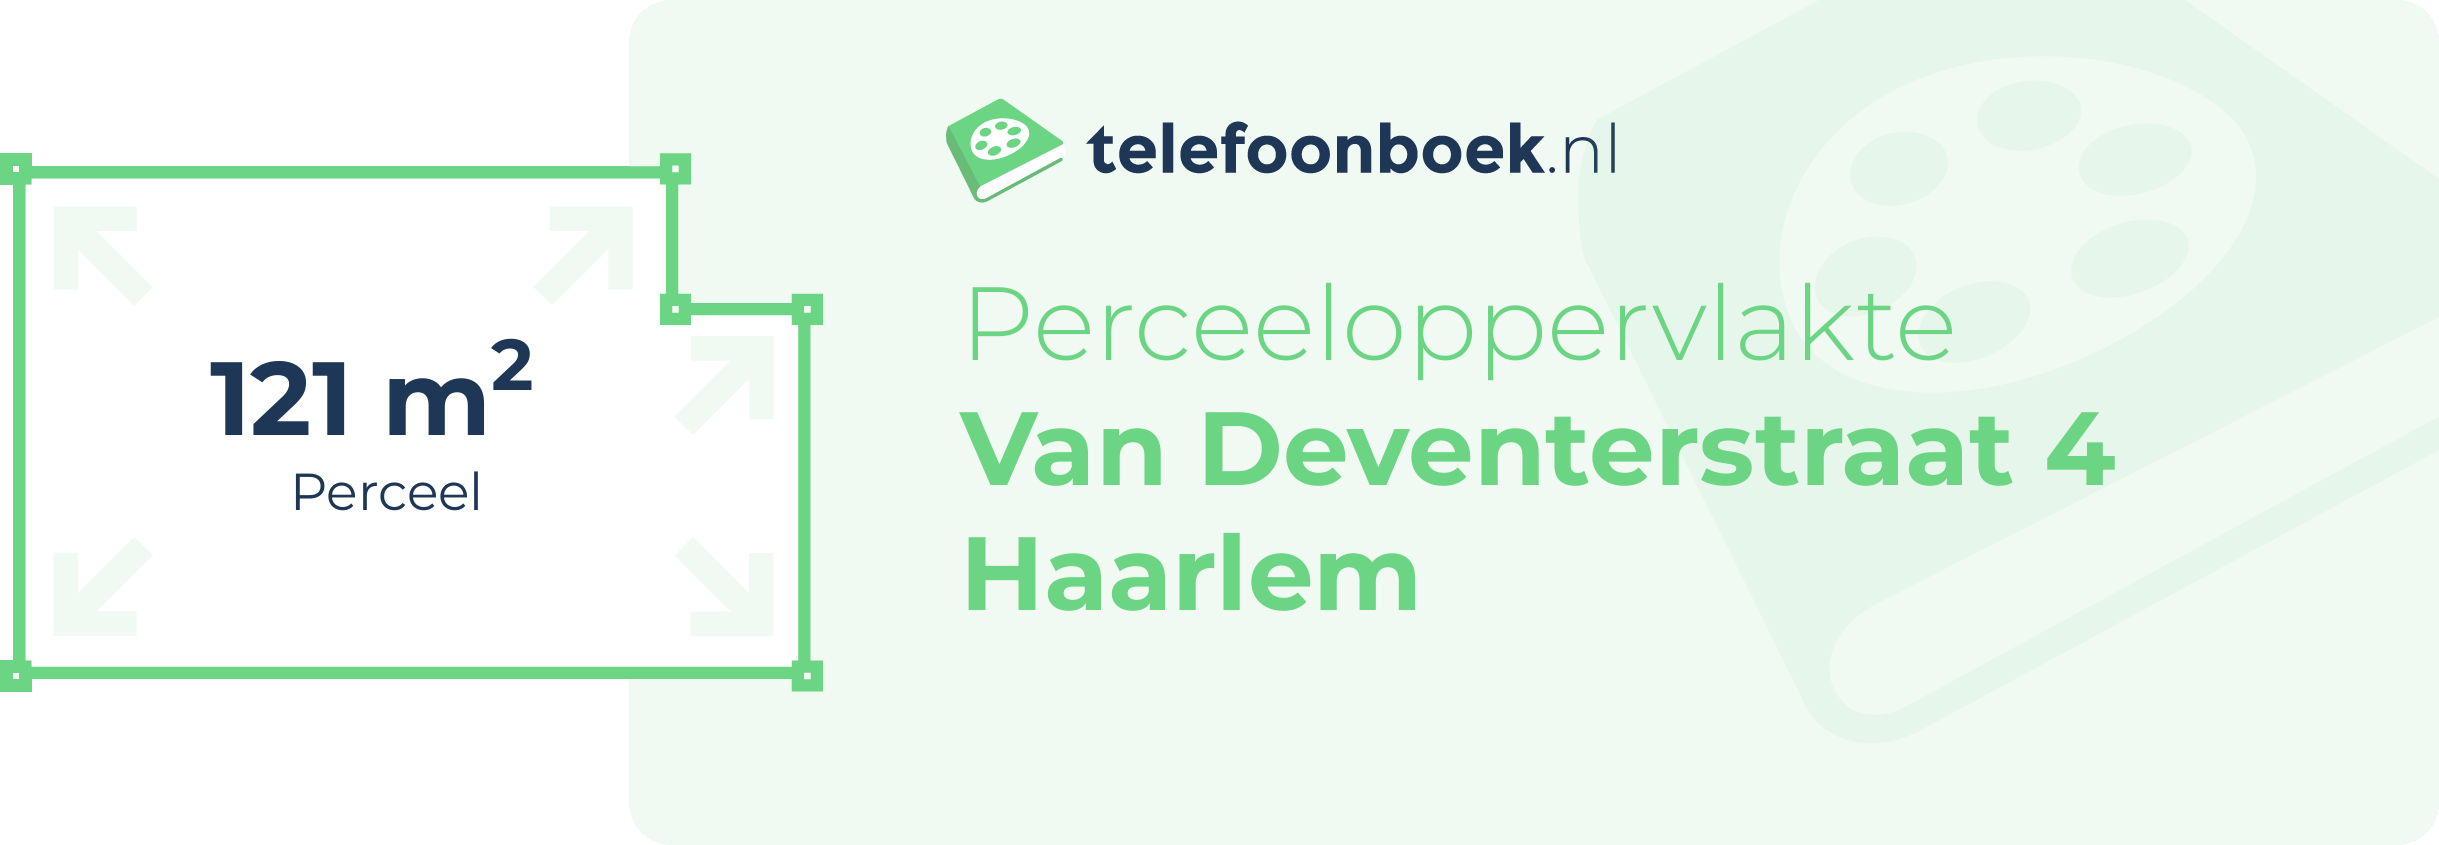 Perceeloppervlakte Van Deventerstraat 4 Haarlem